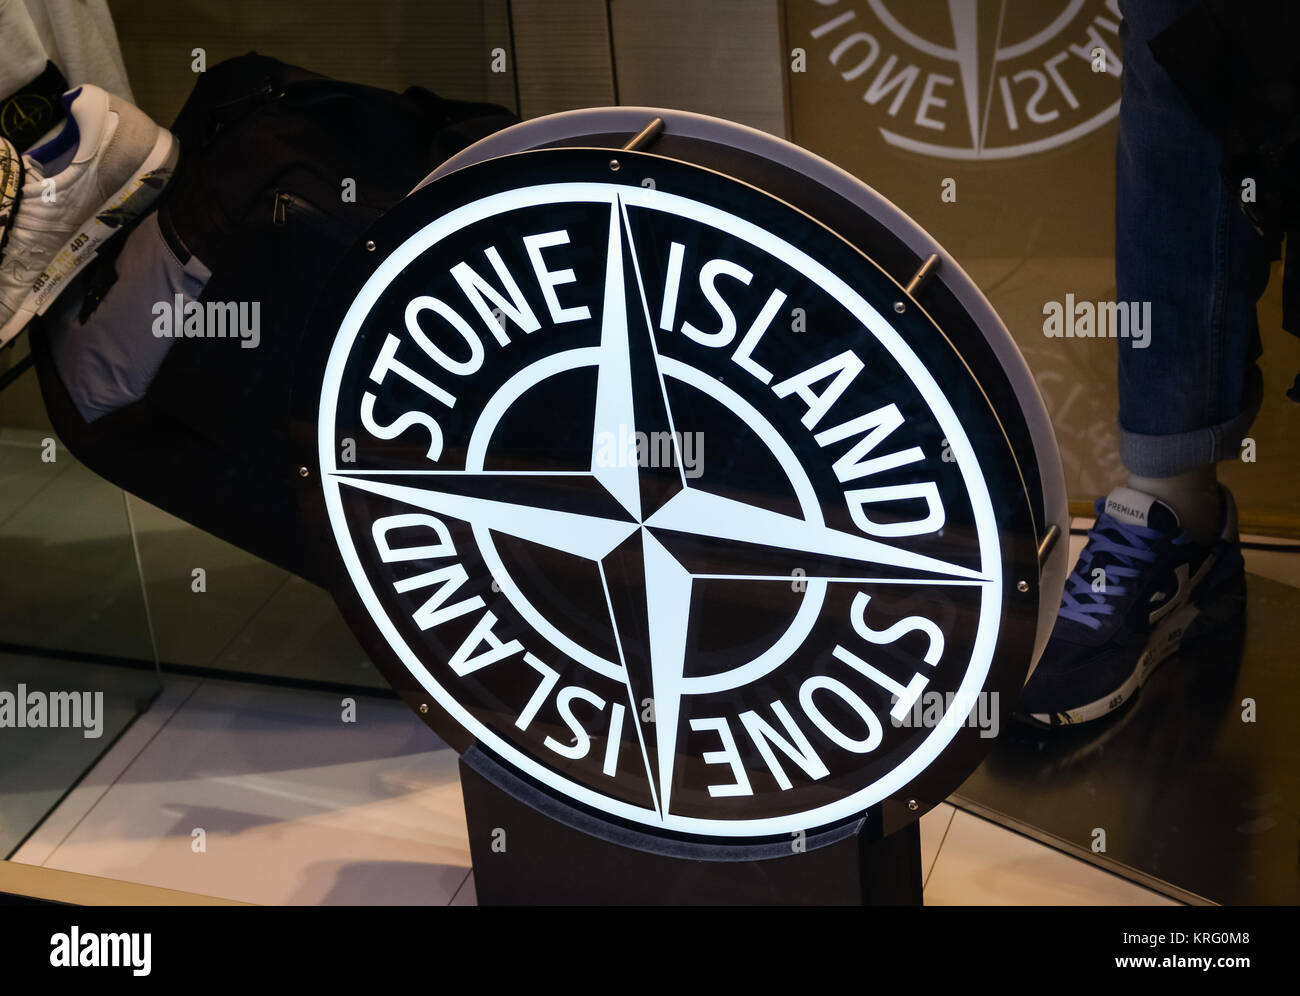 Lodi, Italy - February 28, 2017: Shop window with stone island logo Stock  Photo - Alamy